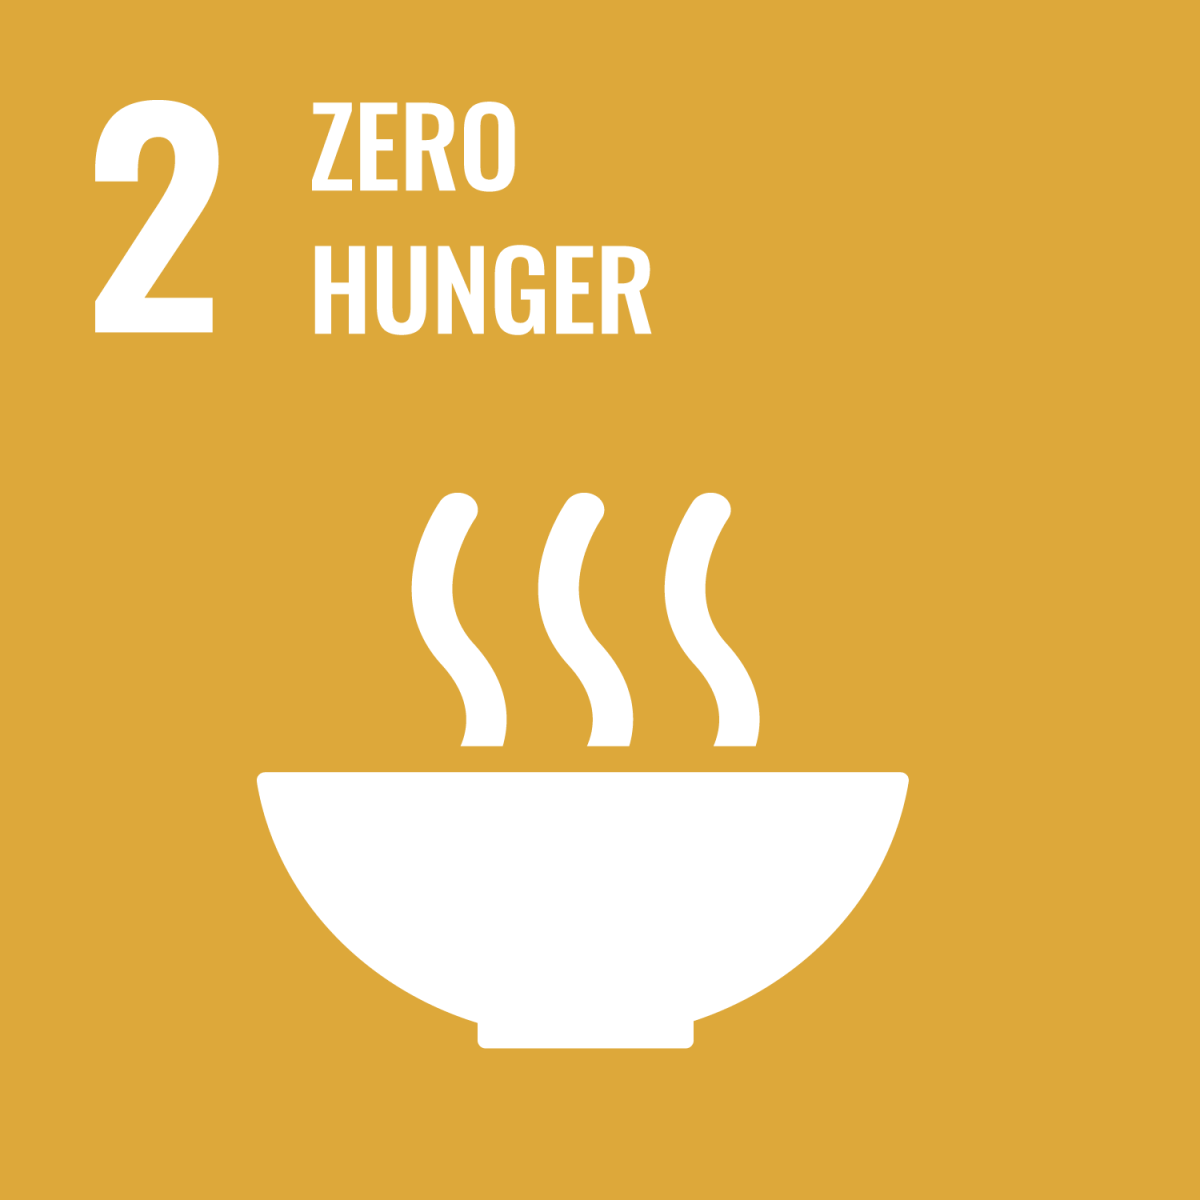 Shows UN SDG 2 - Zero Hunger